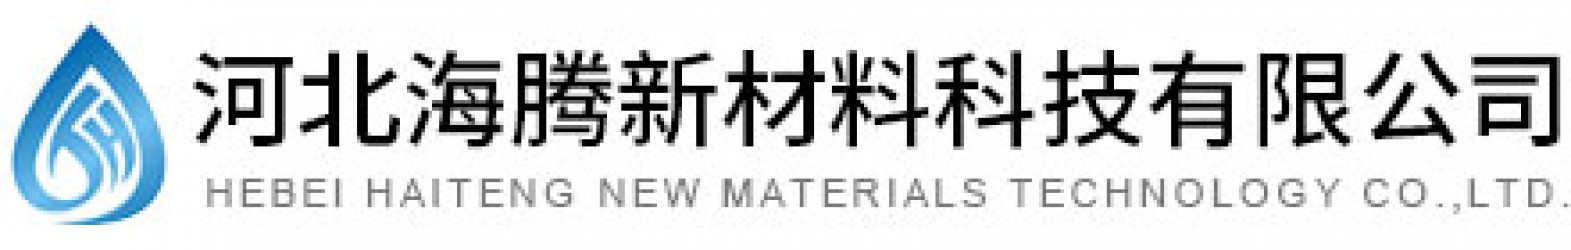 Hebei Haiteng New Materials Technology Co.ltd.